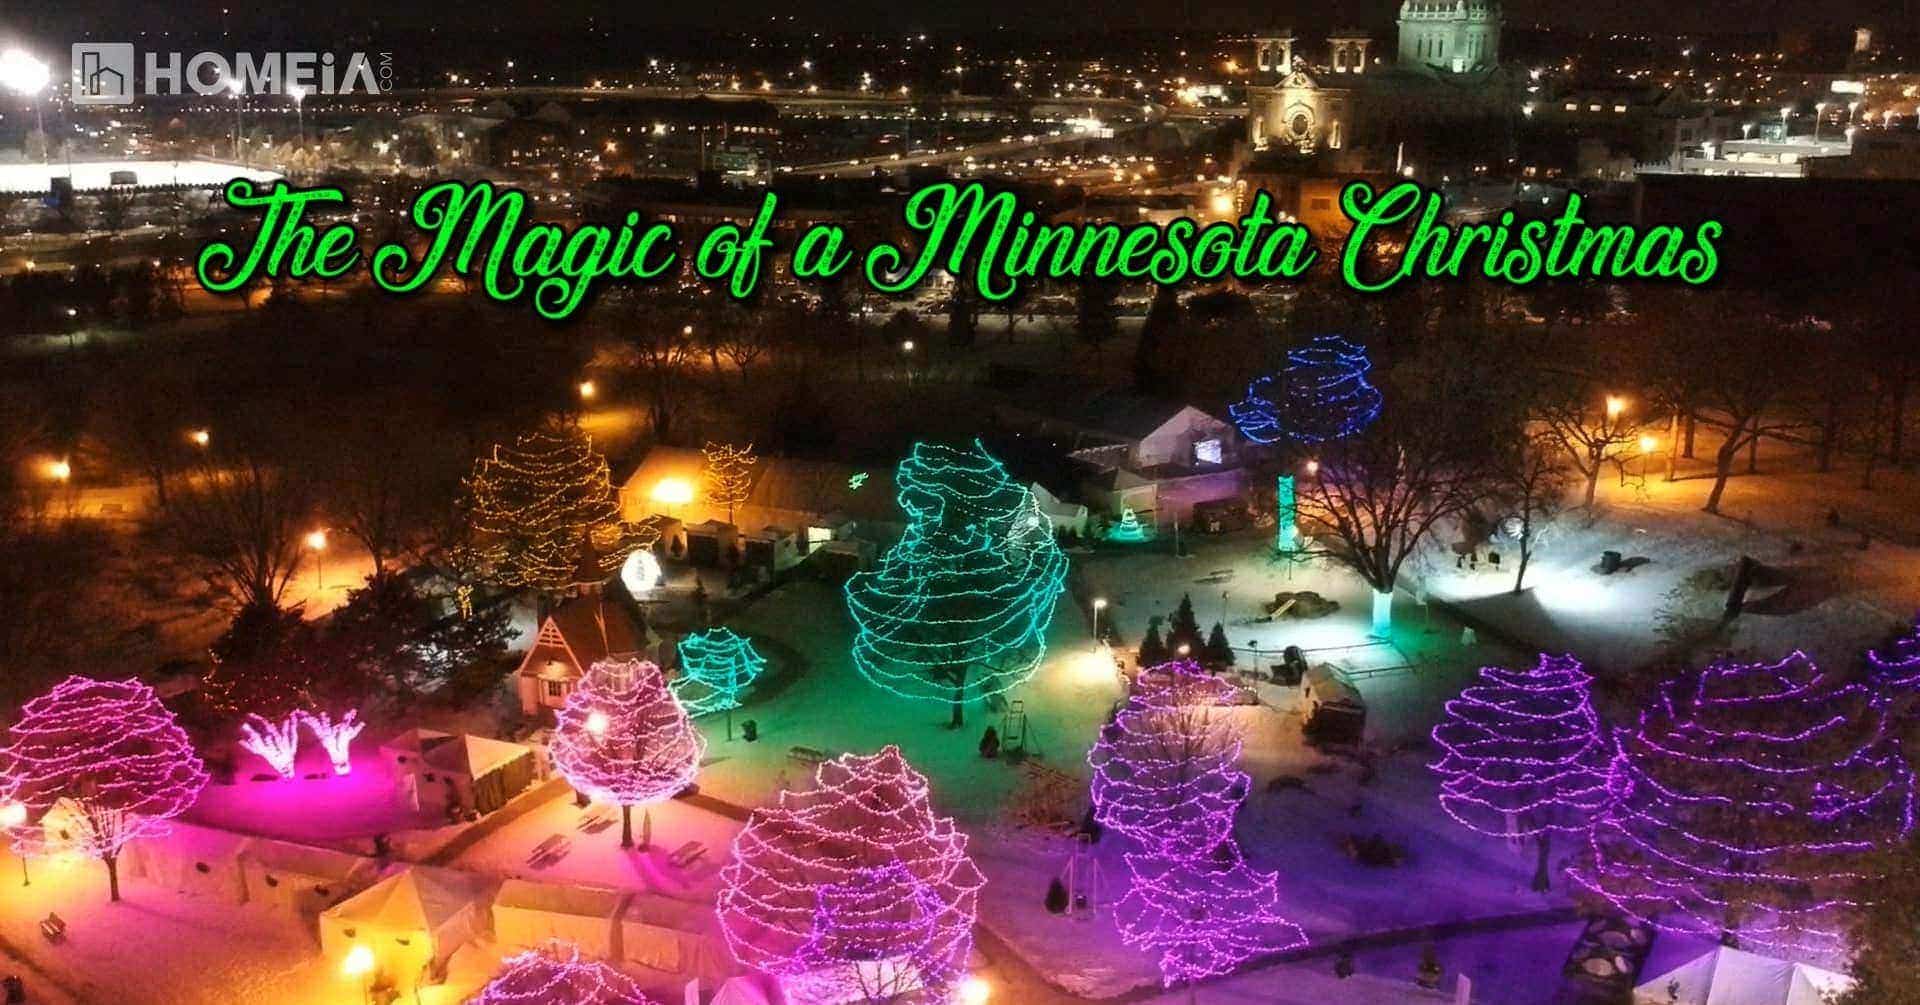 The Magic of a Minnesota Christmas